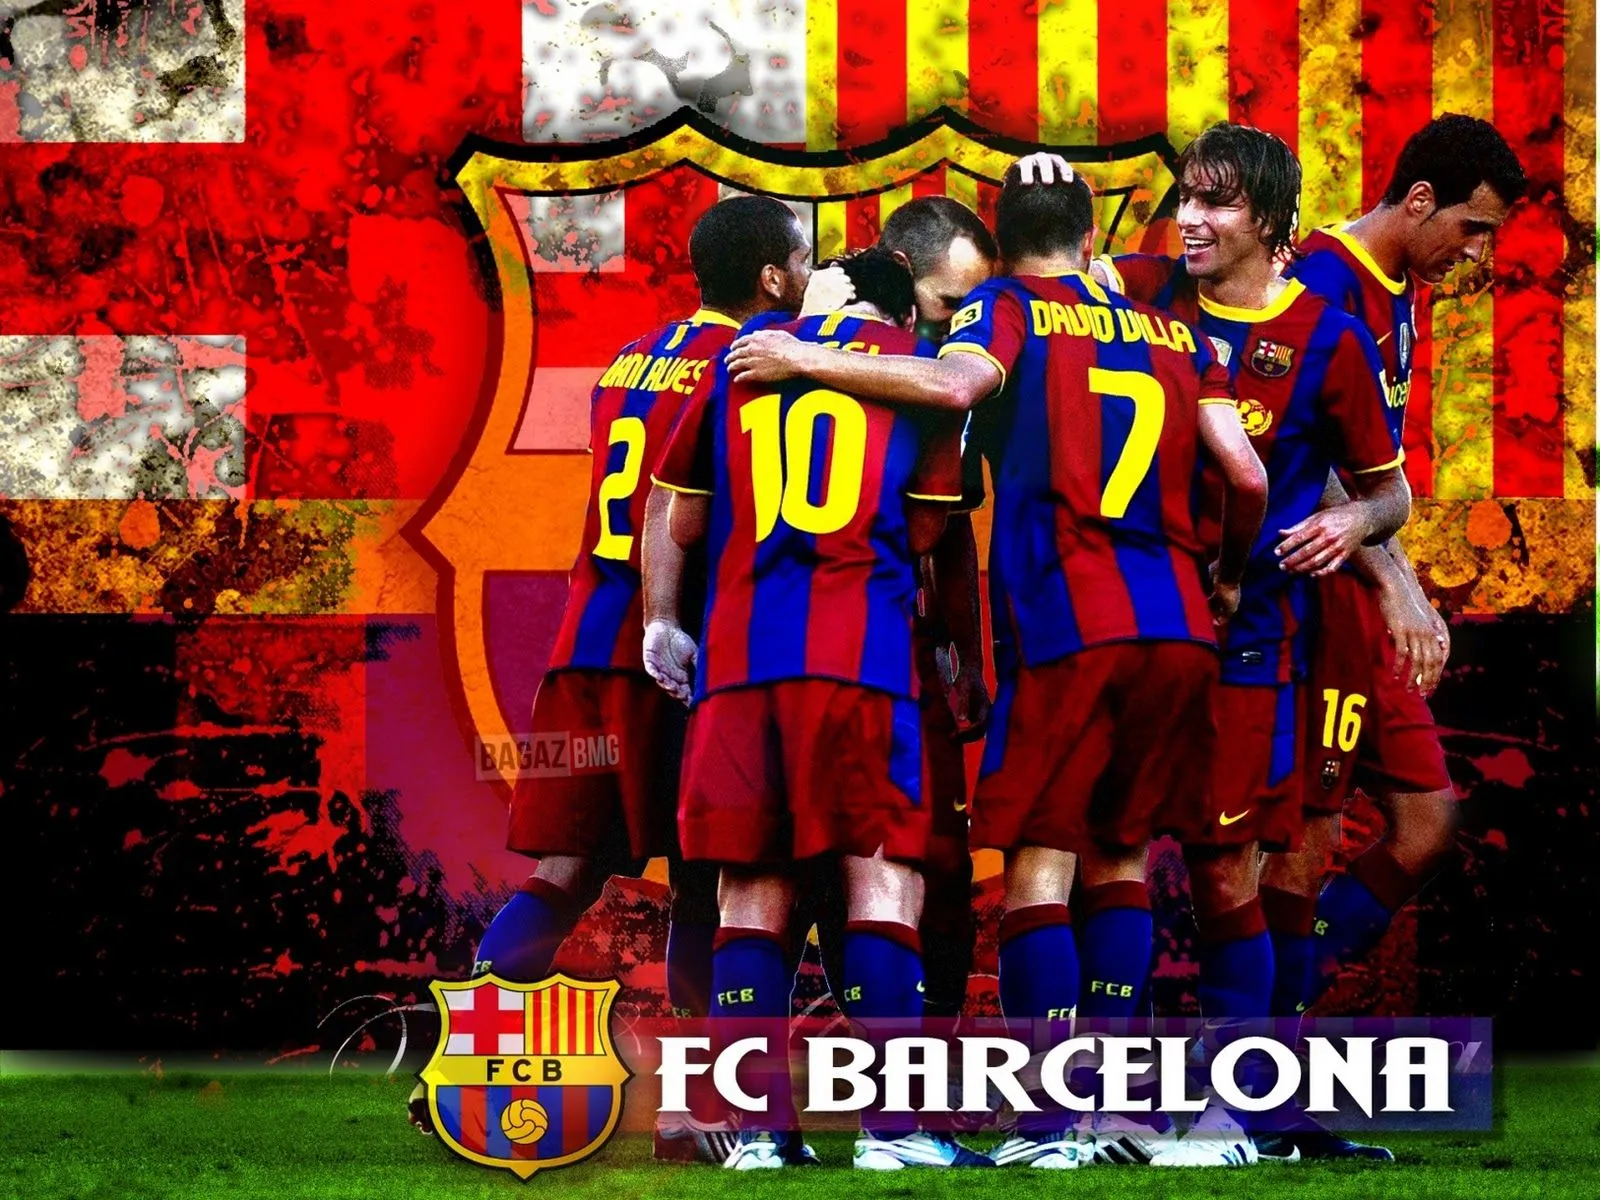 Fondos pantalla FC Barcelona - El Blog del FcBarcelona